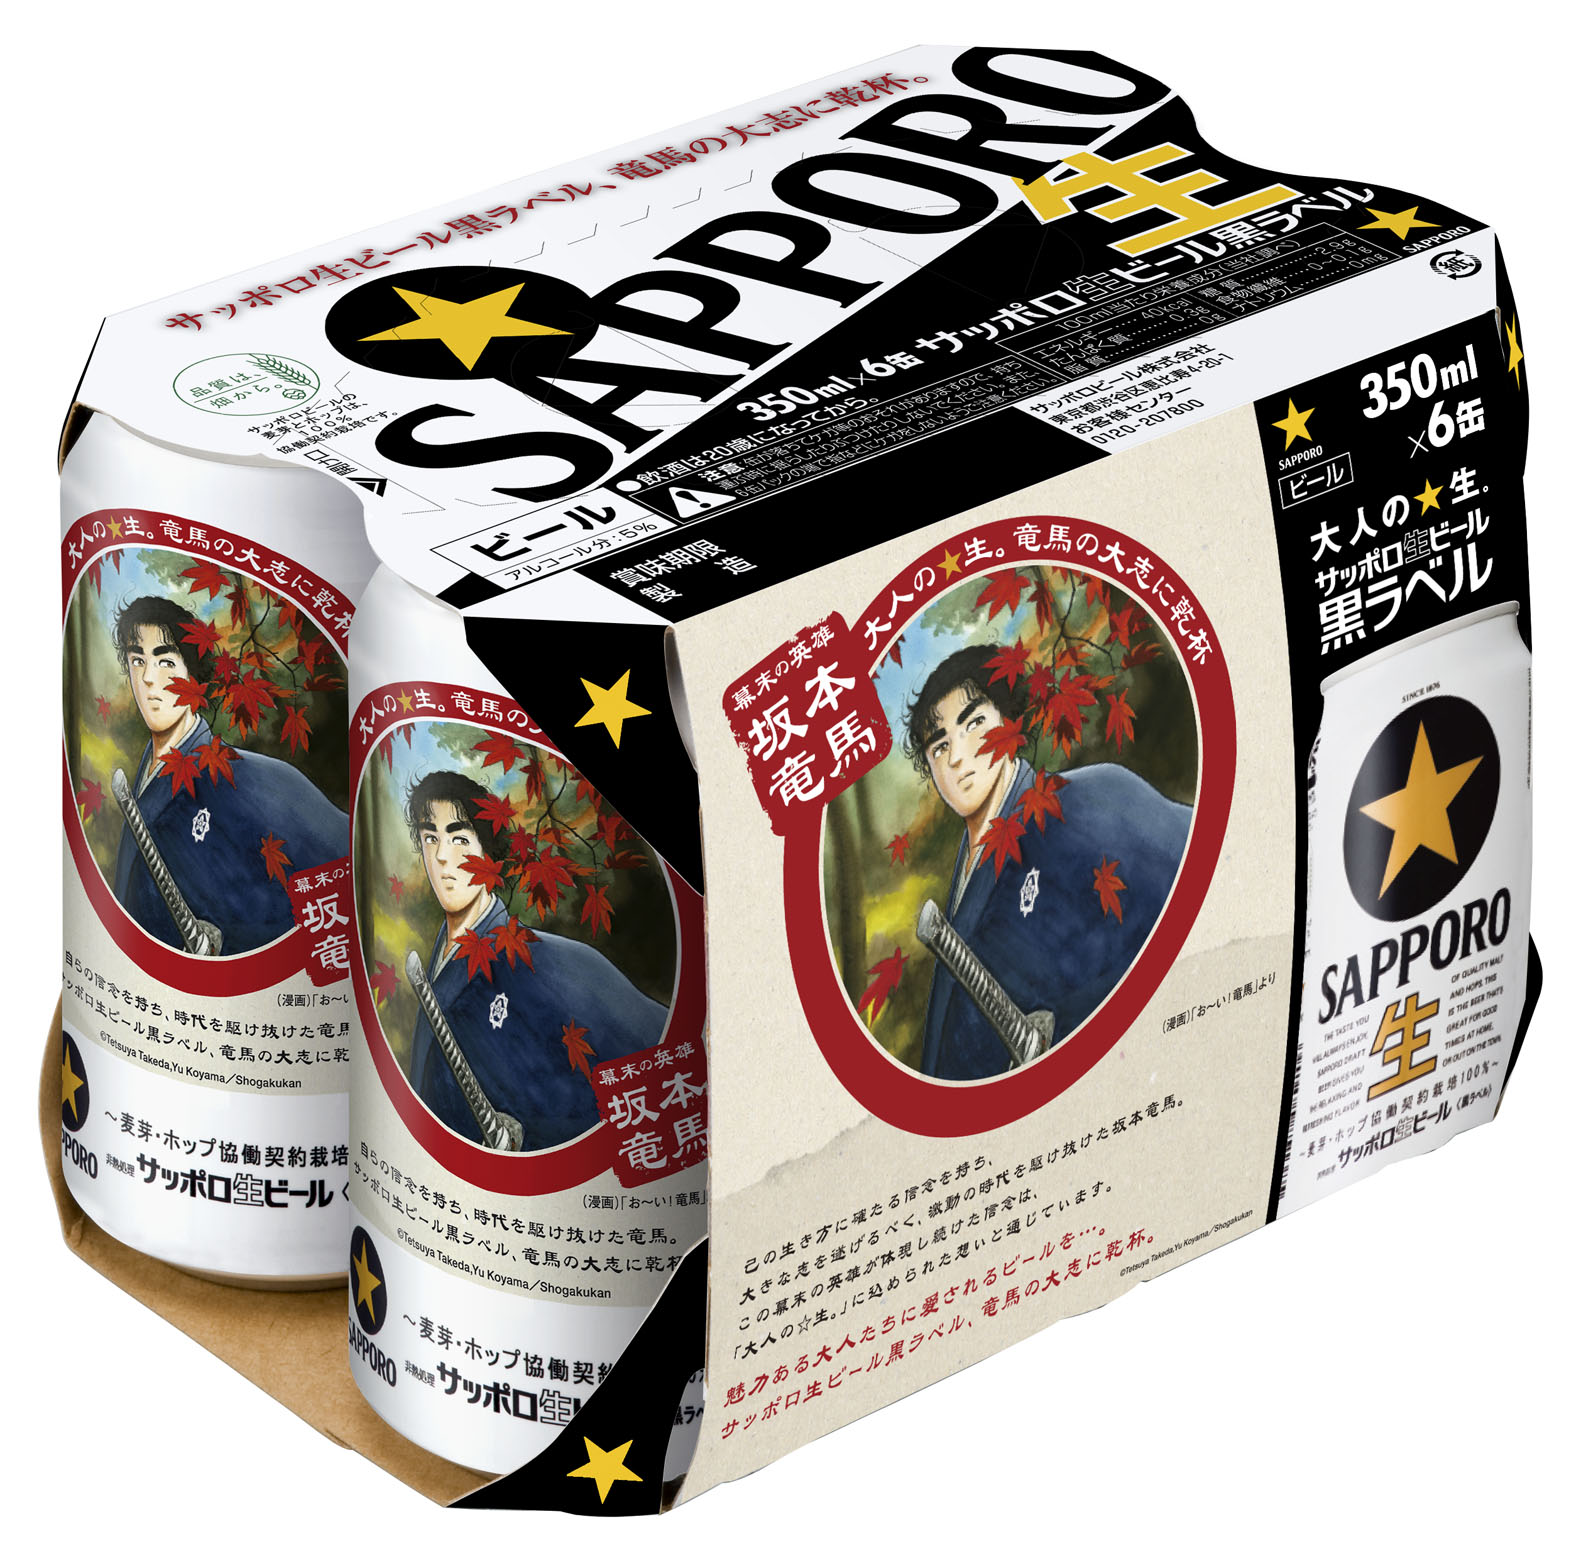 お い 竜馬 コラボレーション缶全国発売のお知らせ ニュースリリース サッポロビール